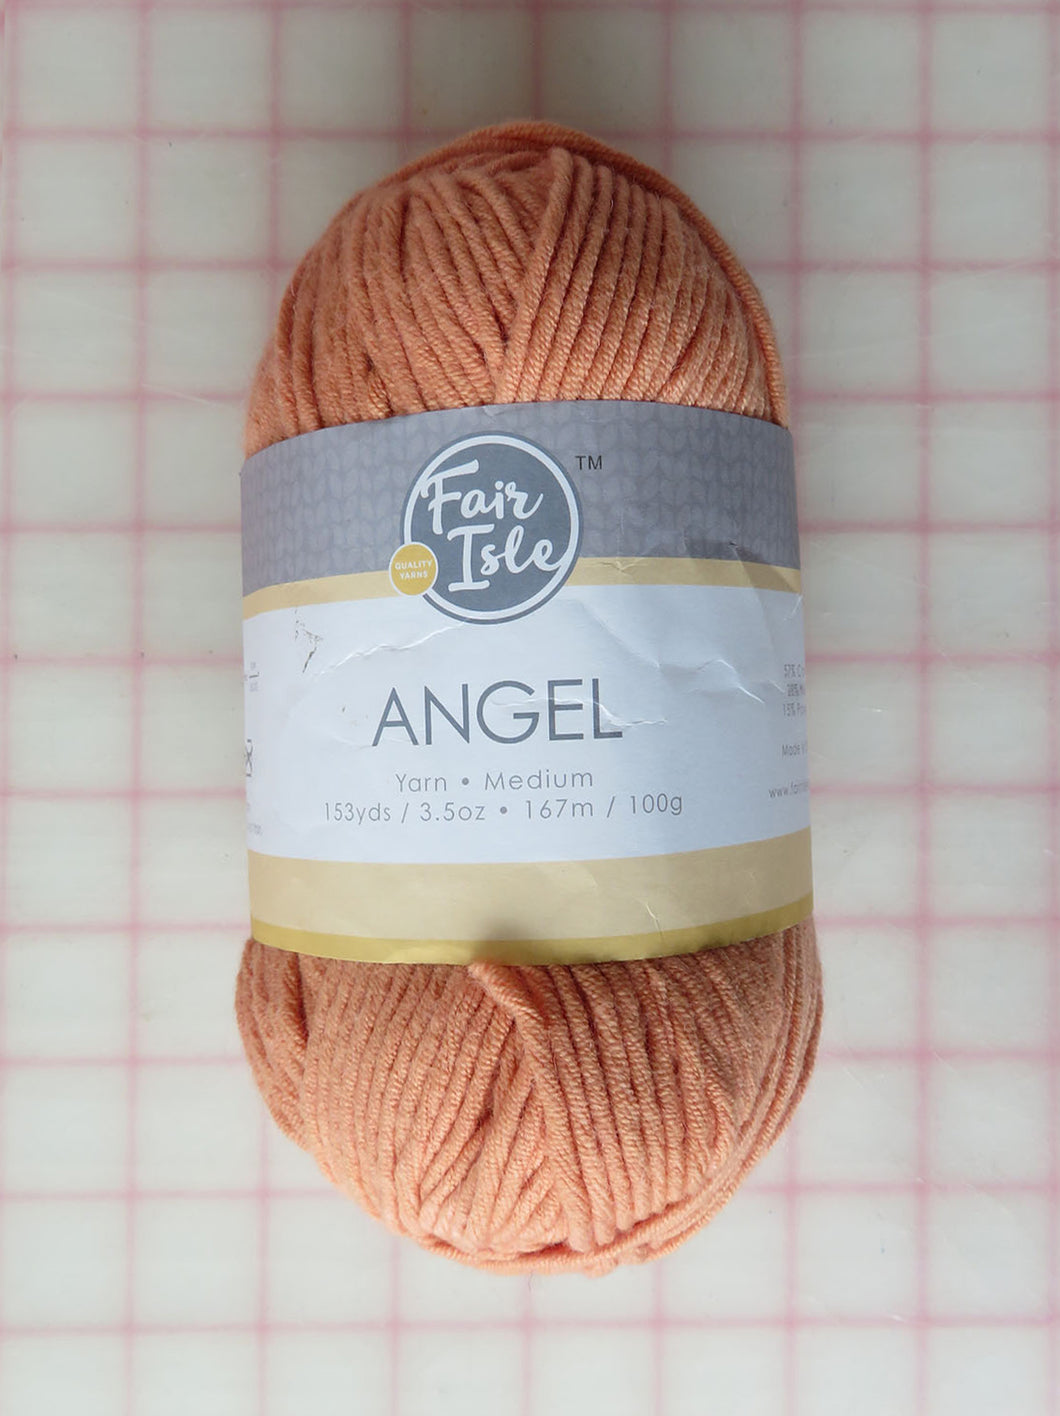 Angel Medium Yarn in Apricot